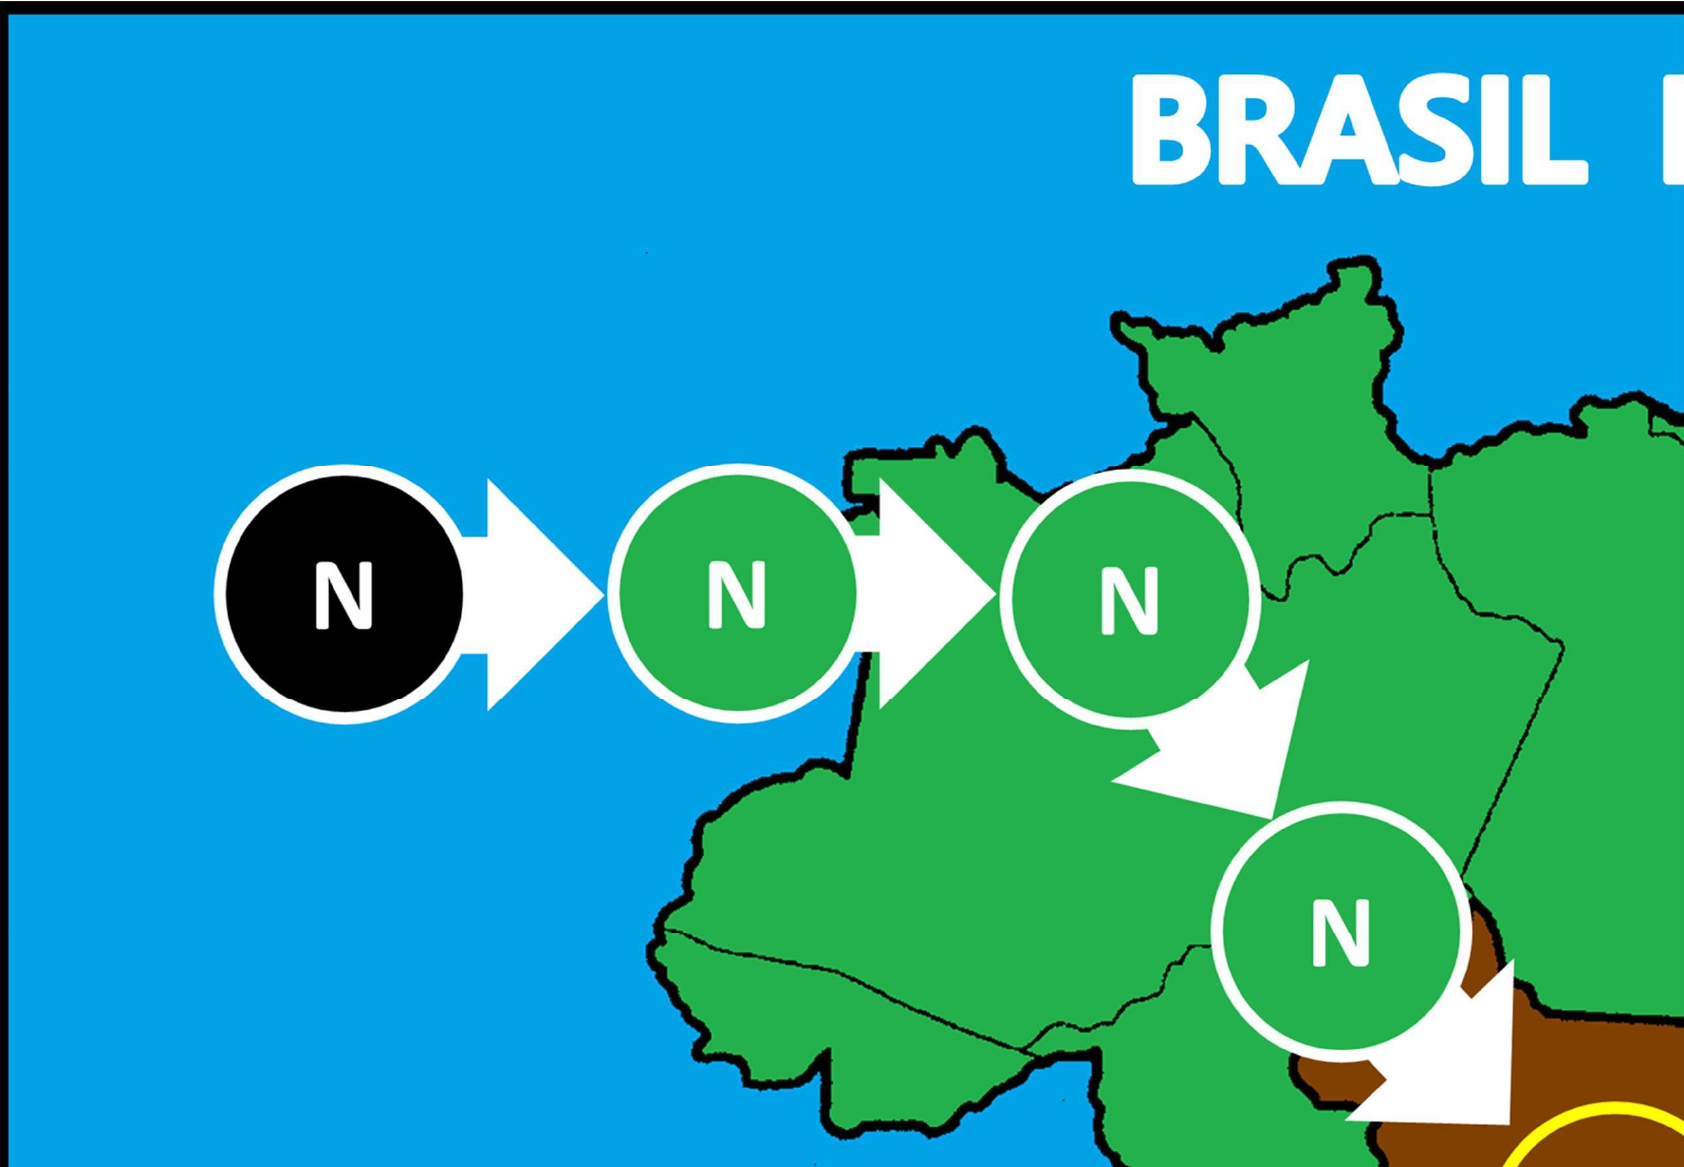 classe invertida: GeoQuiz Brasil: Regiões